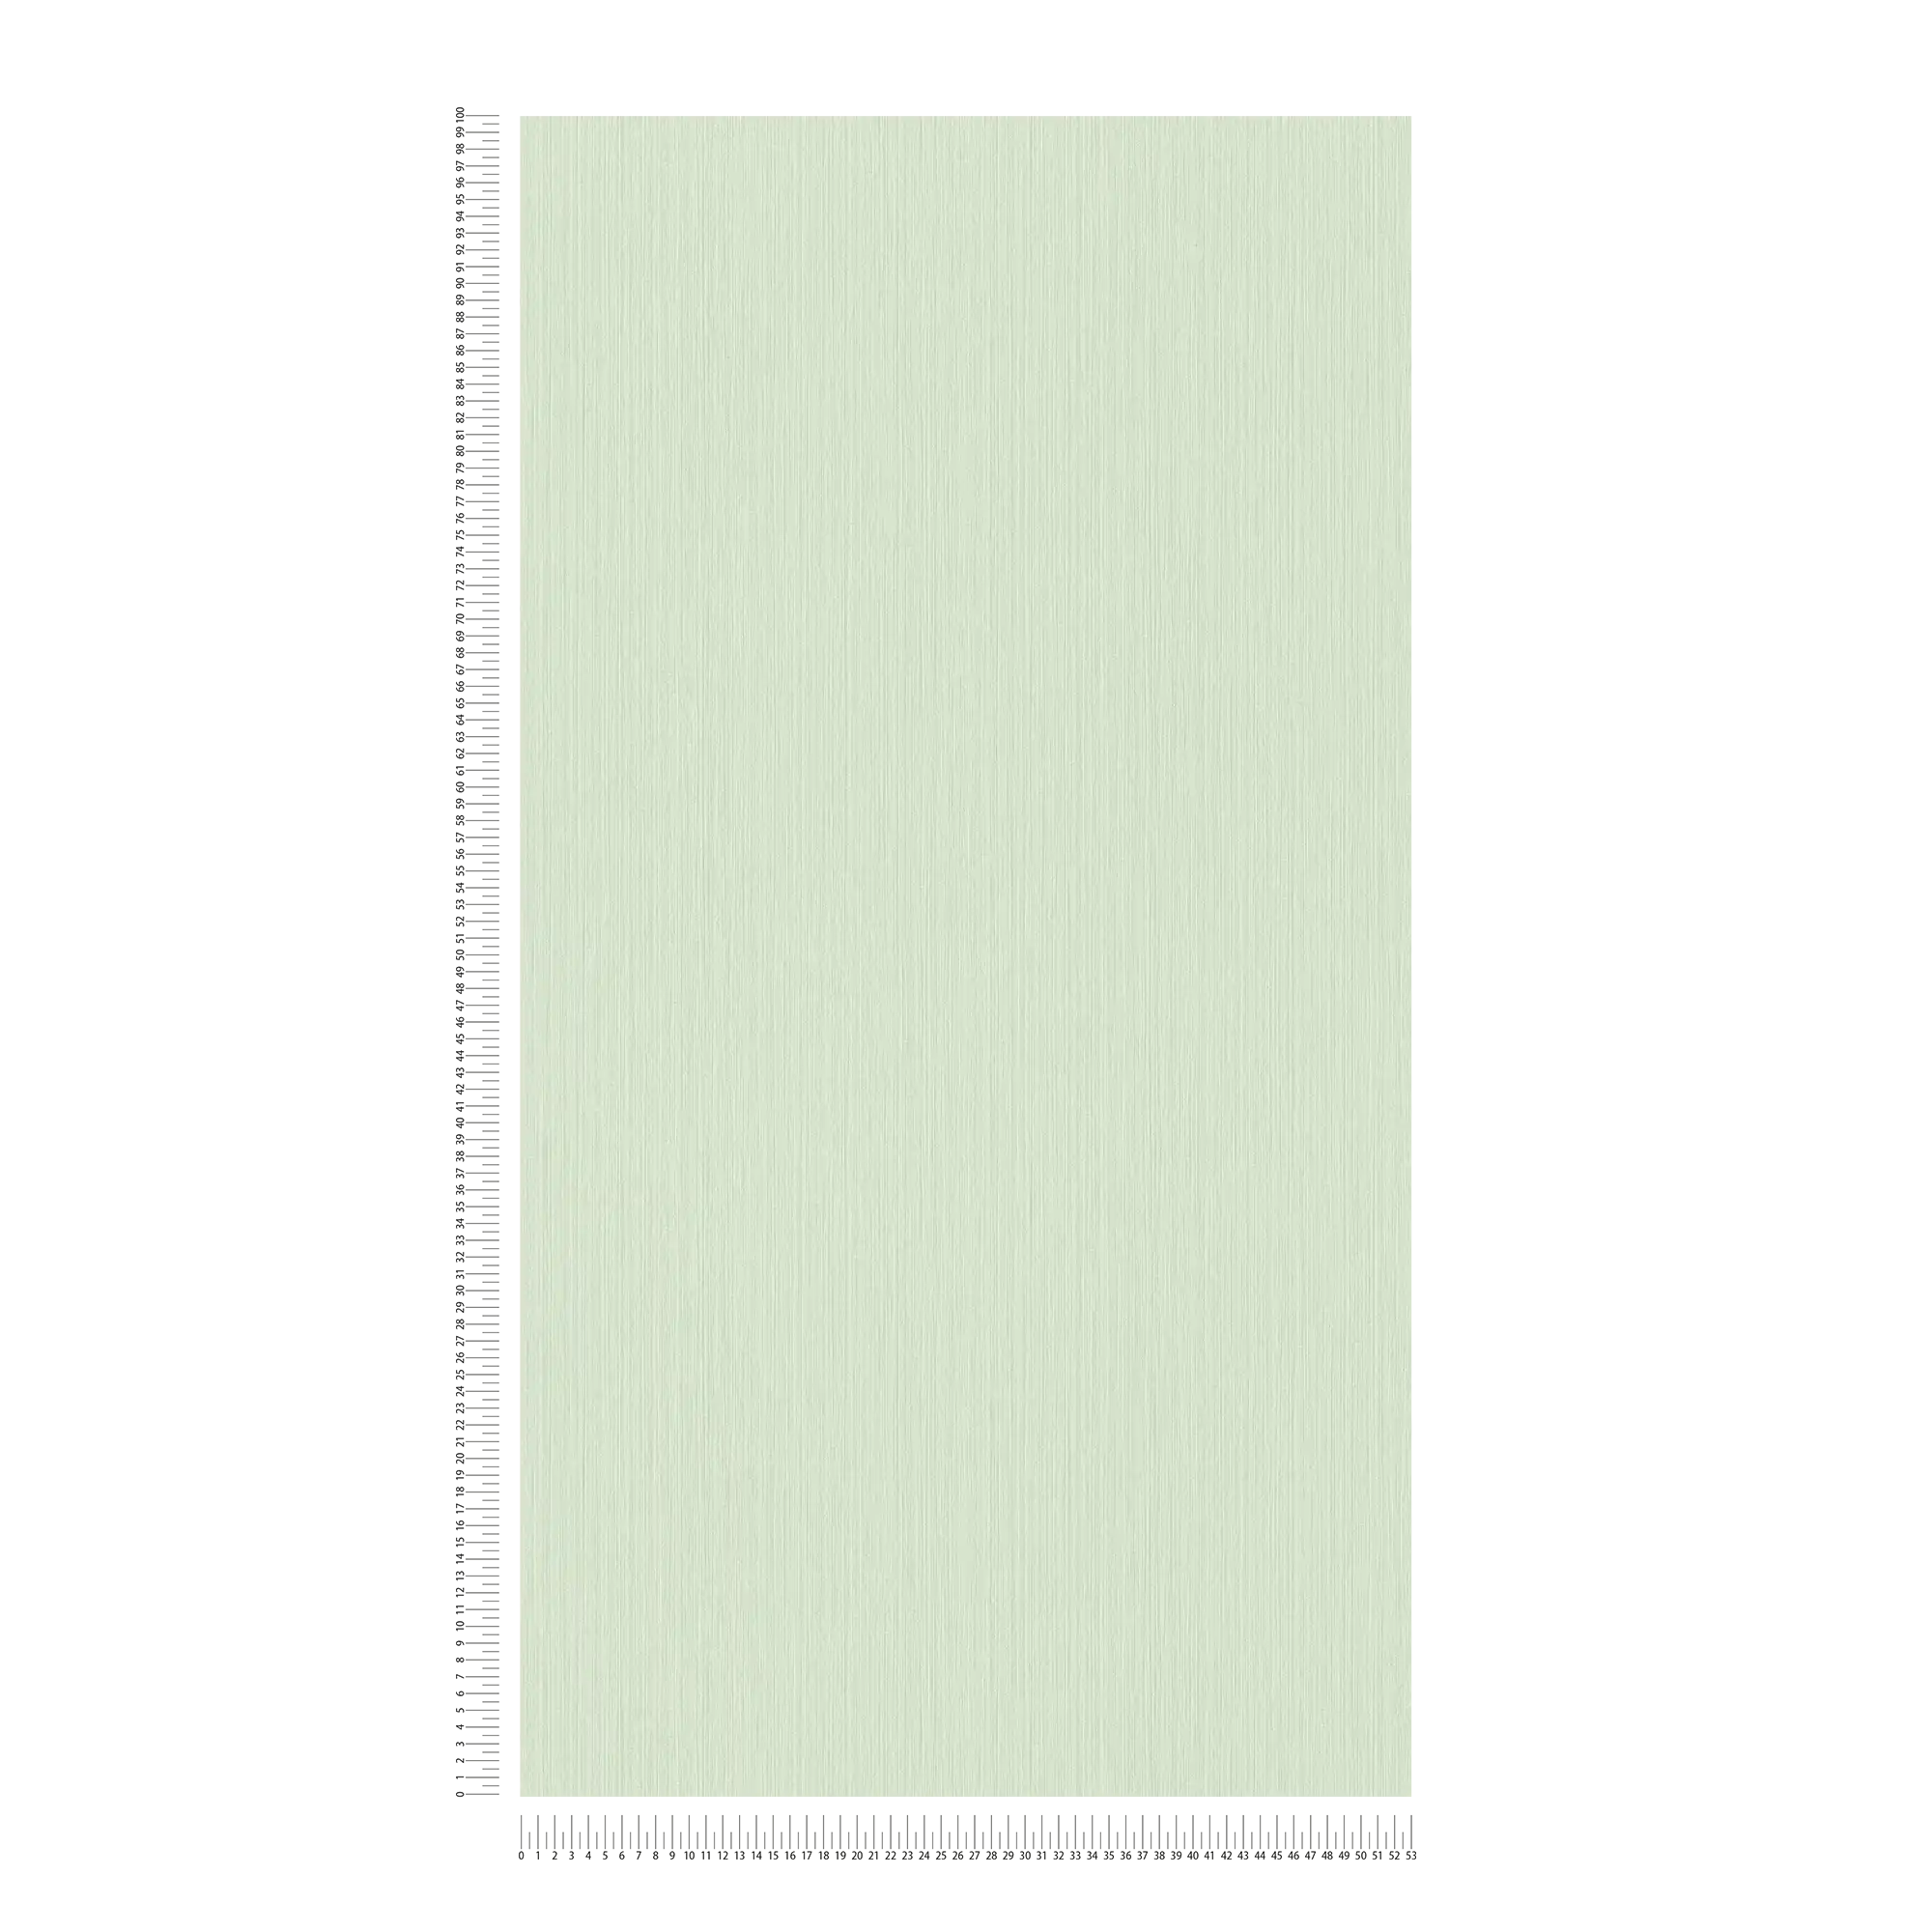             Einfarbige Tapete Hellgrün mit meliertem Textileffekt von MICHALSKY
        